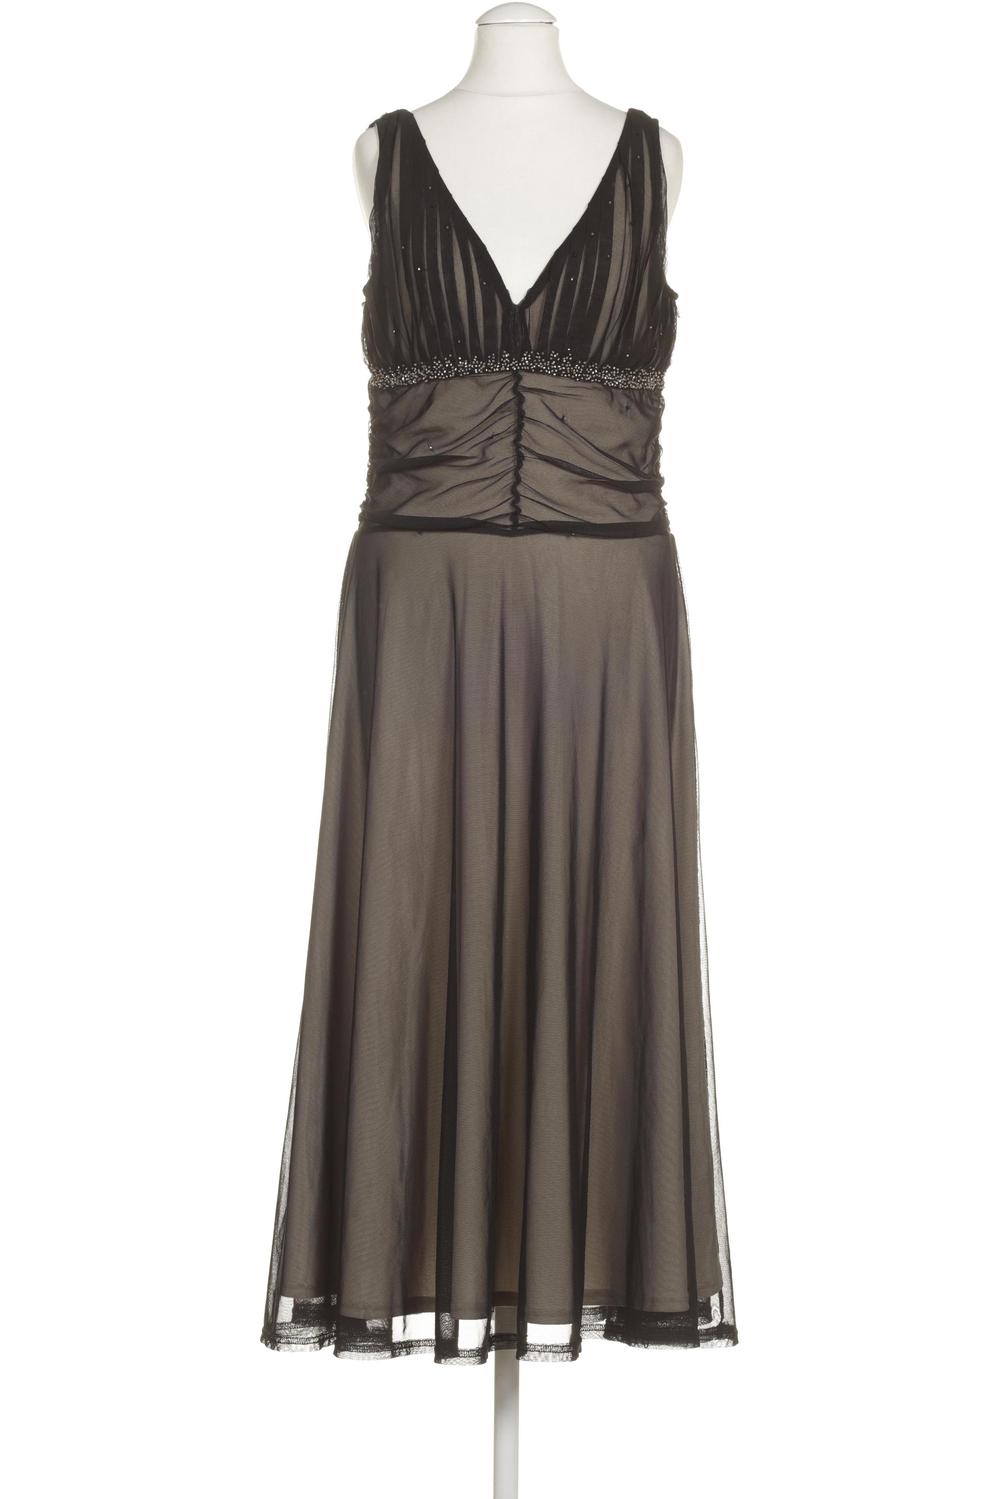 Laura Scott Damen Kleid DE 38 Second Hand kaufen | ubup